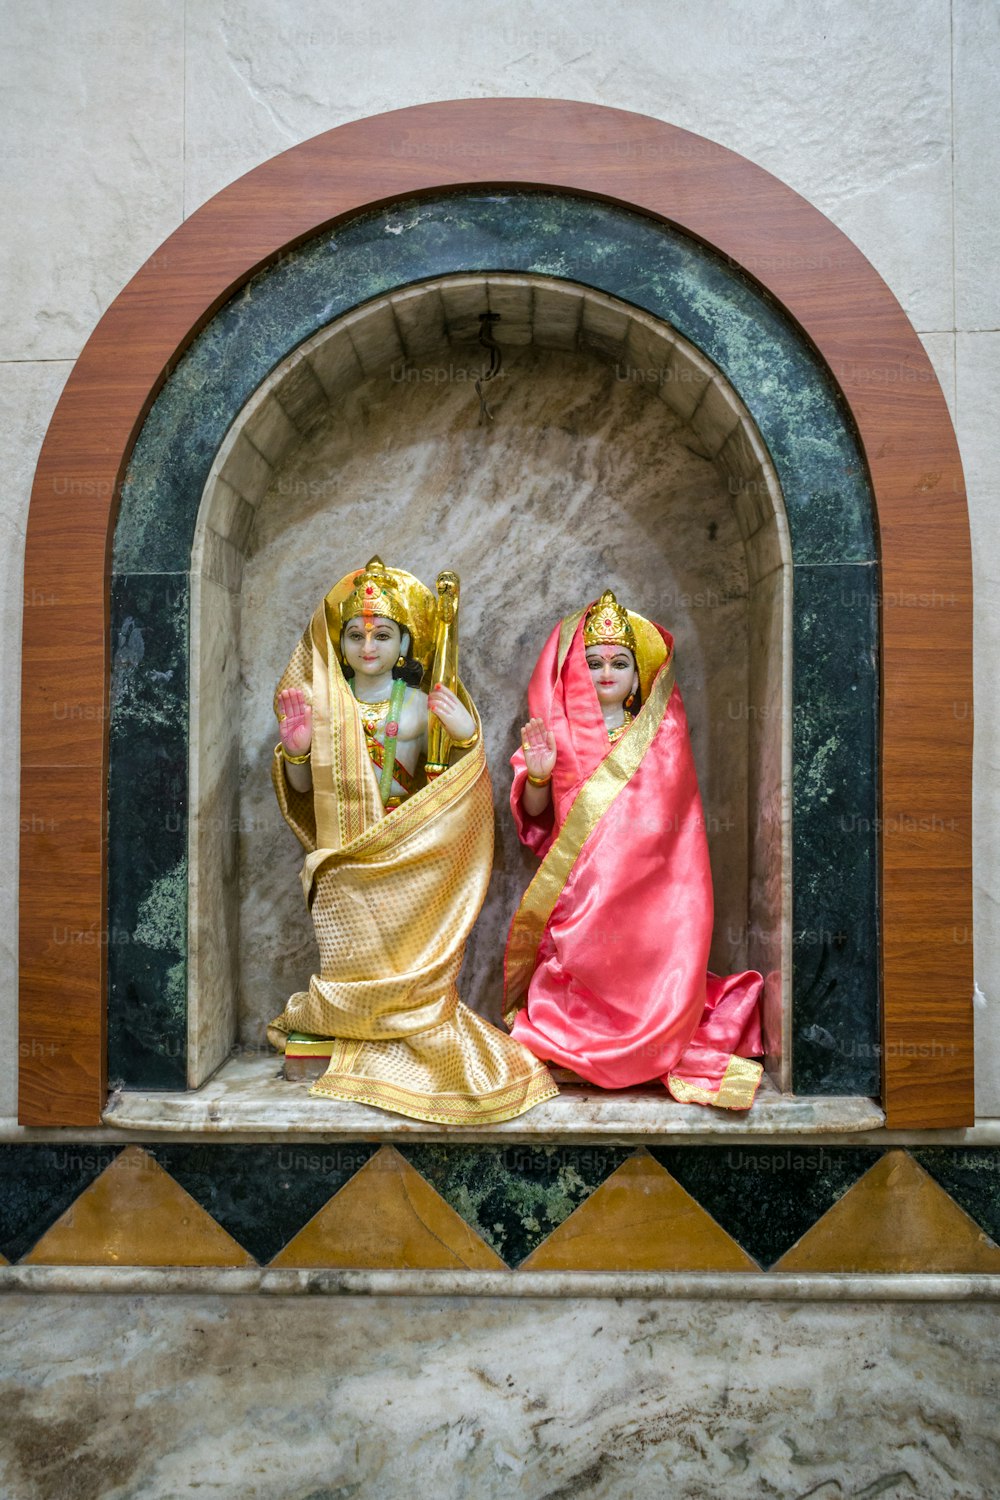 Una estatua de dos mujeres en un nicho